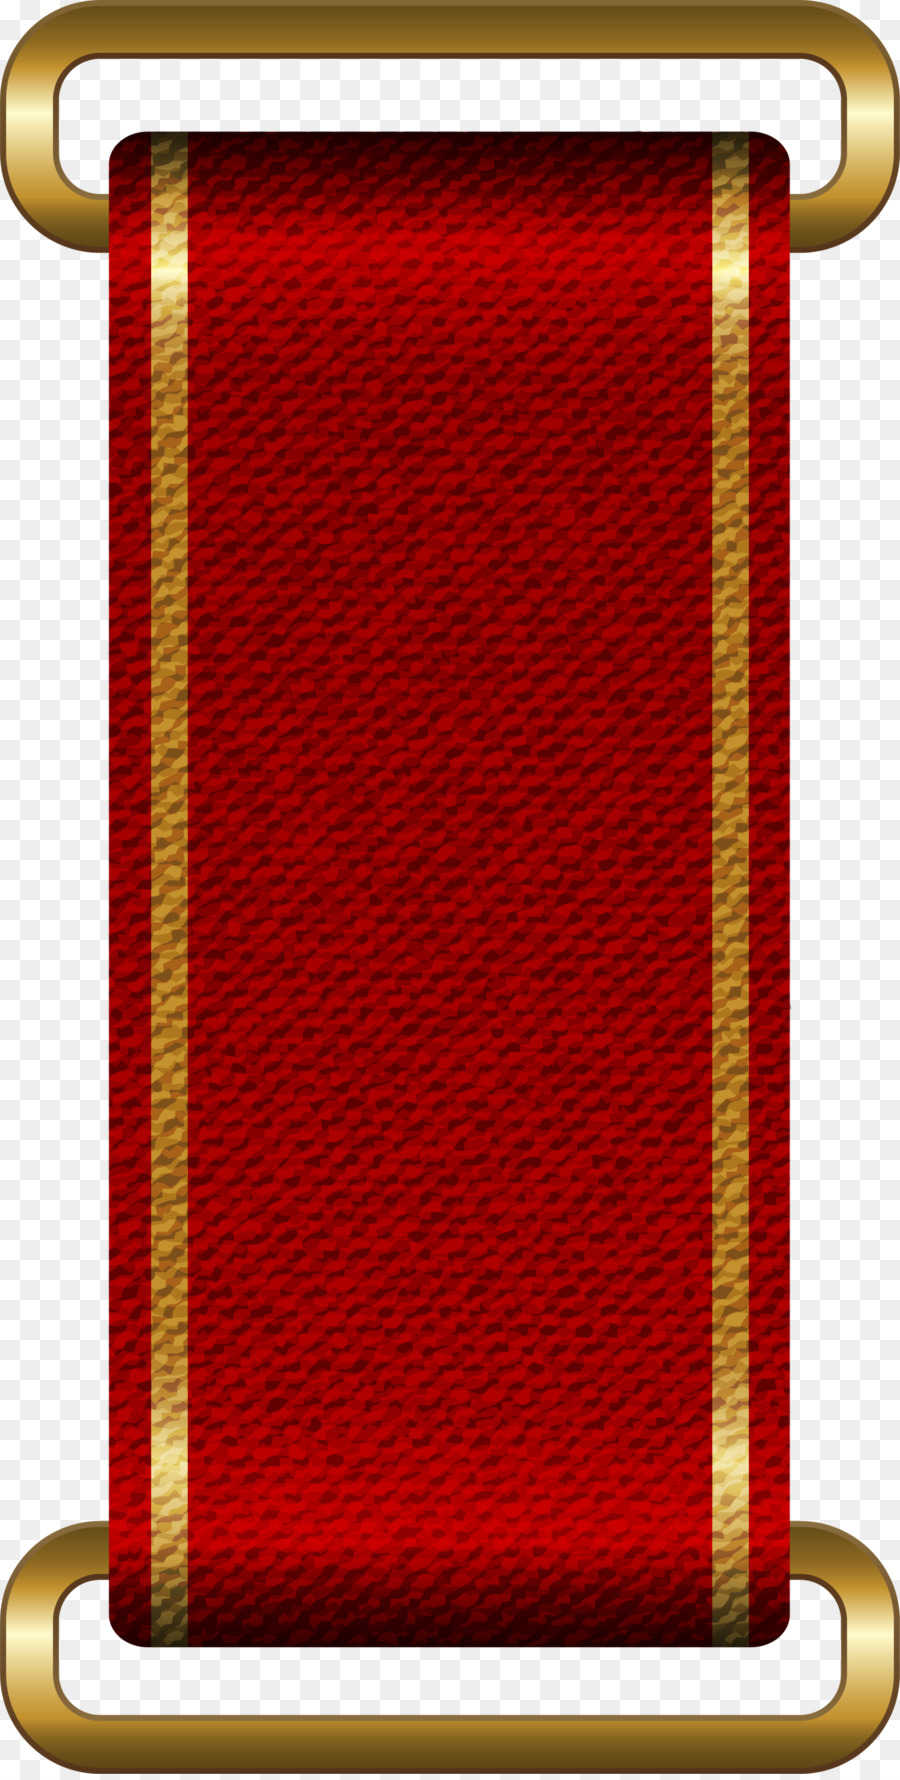 đỏ logo - Băng đỏ logo